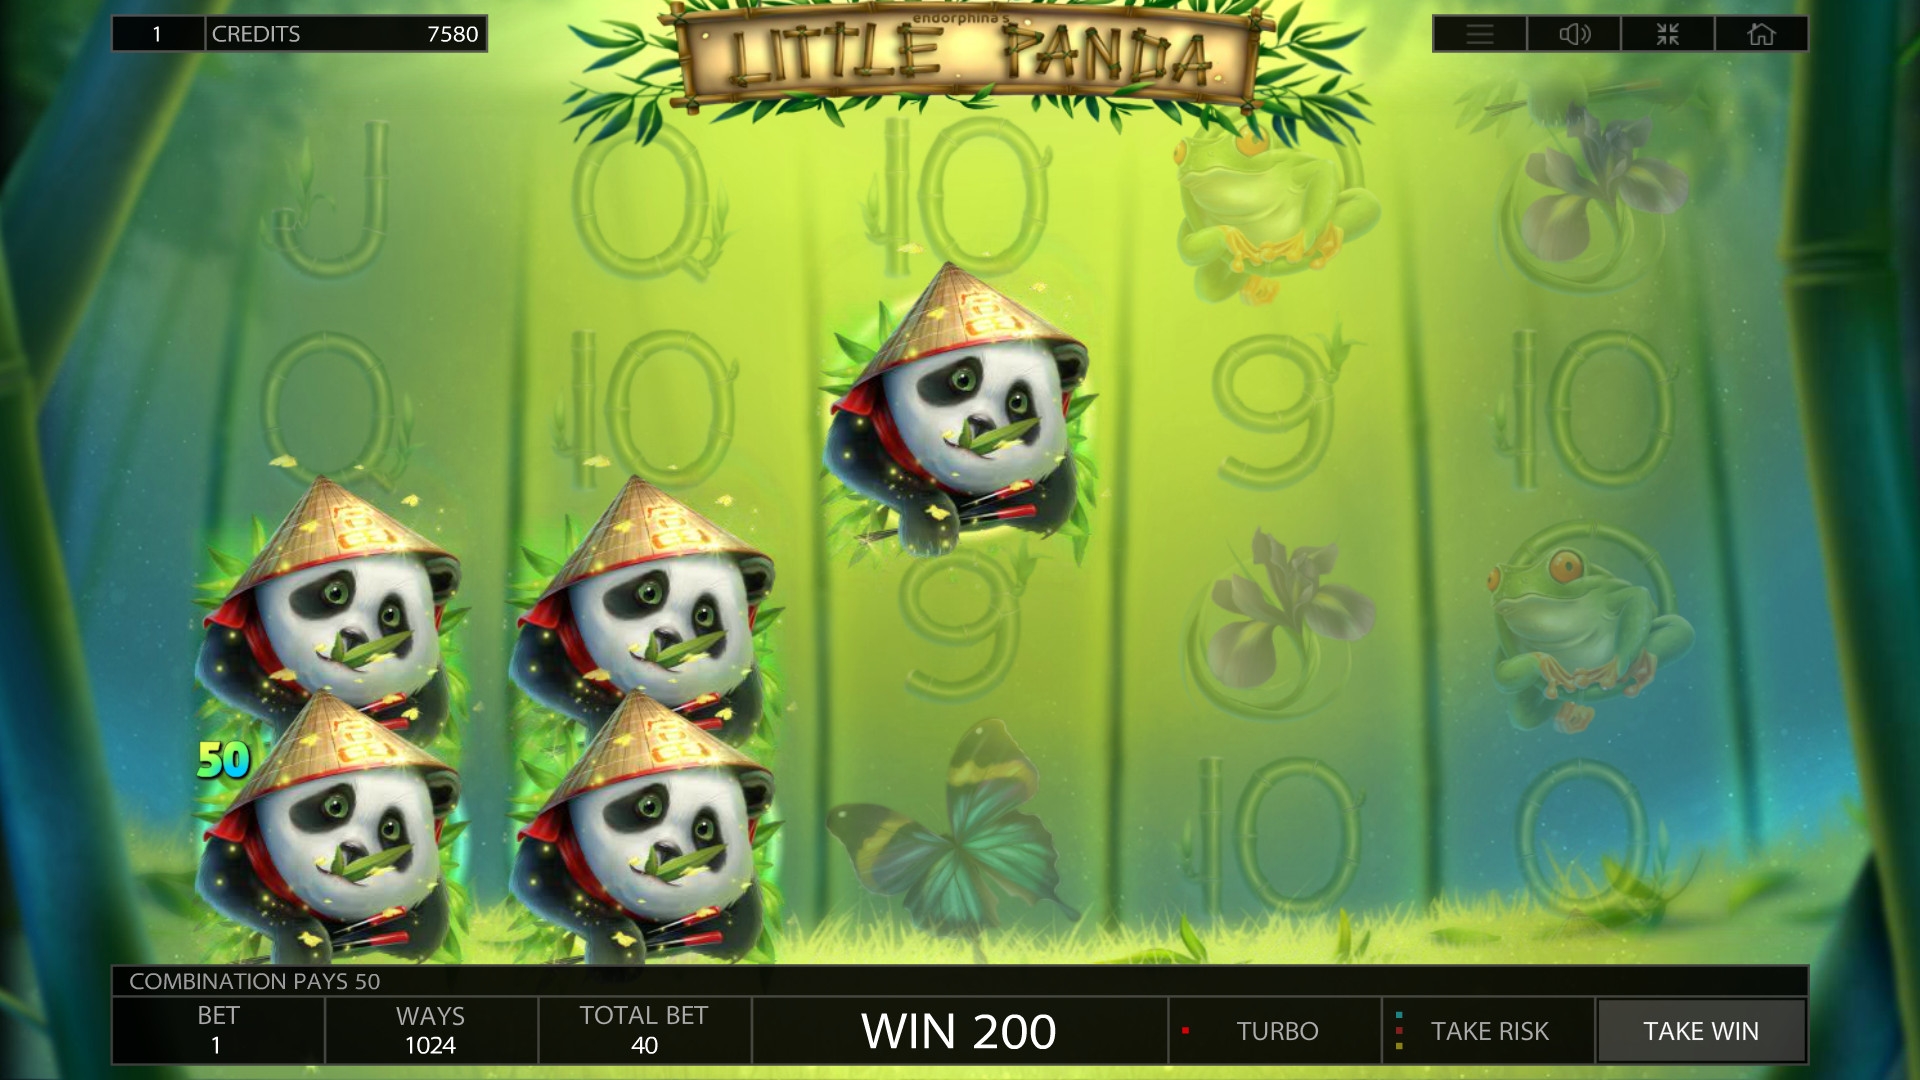 Little Panda (Little Panda) from category Slots